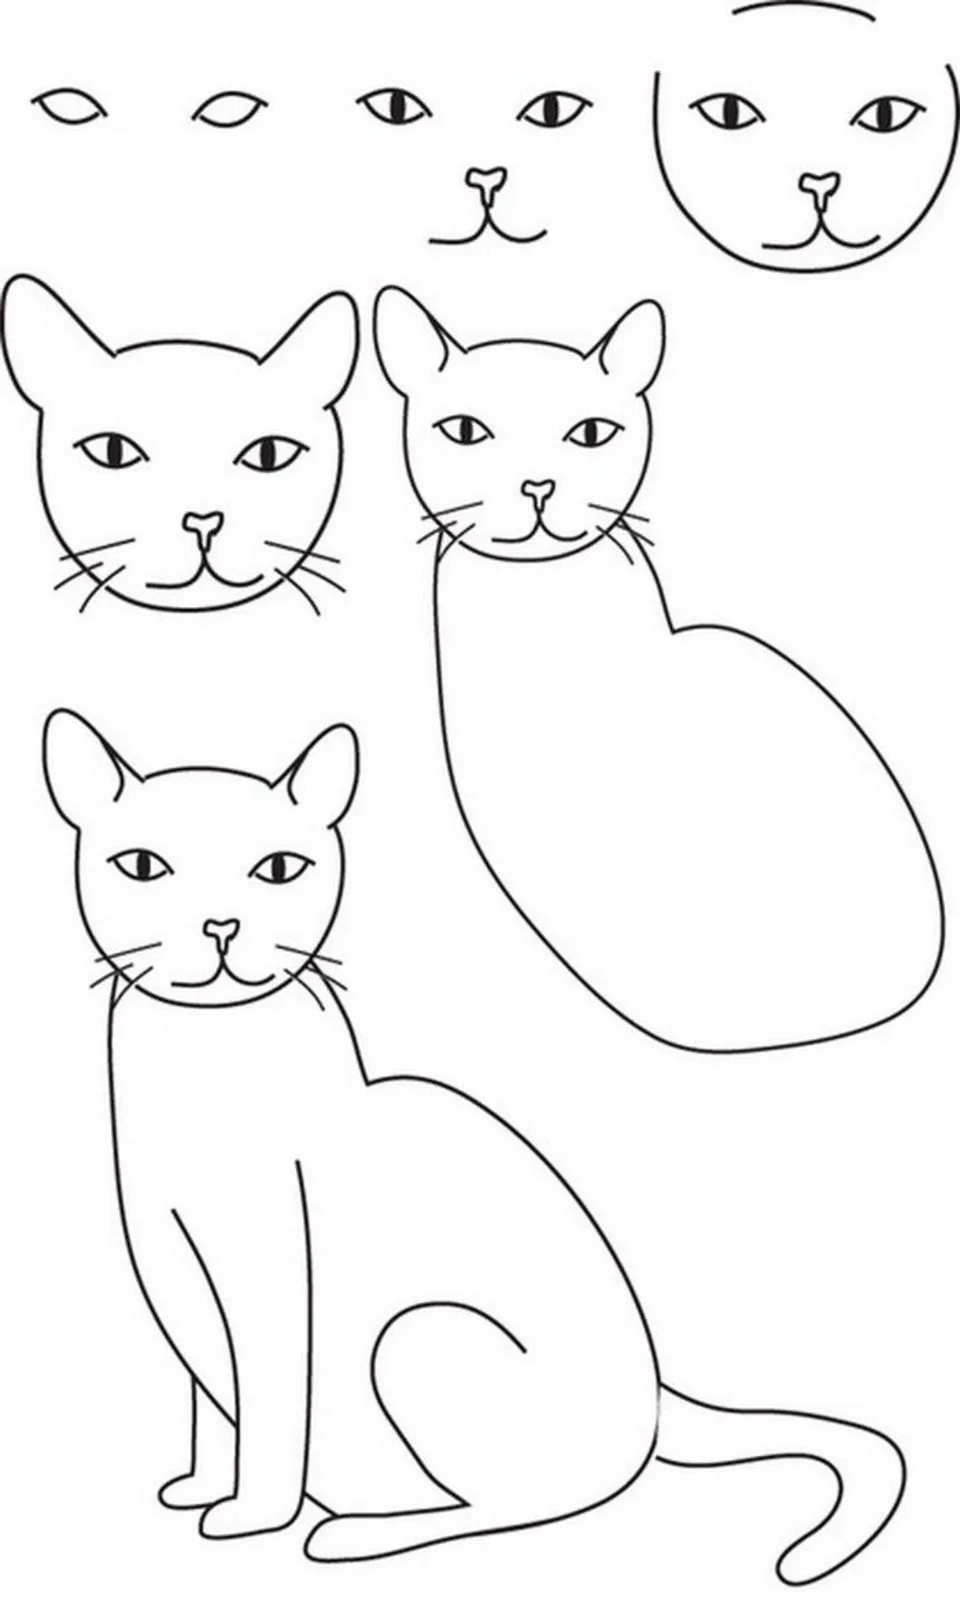 Рисунок кошки карандашом для детей